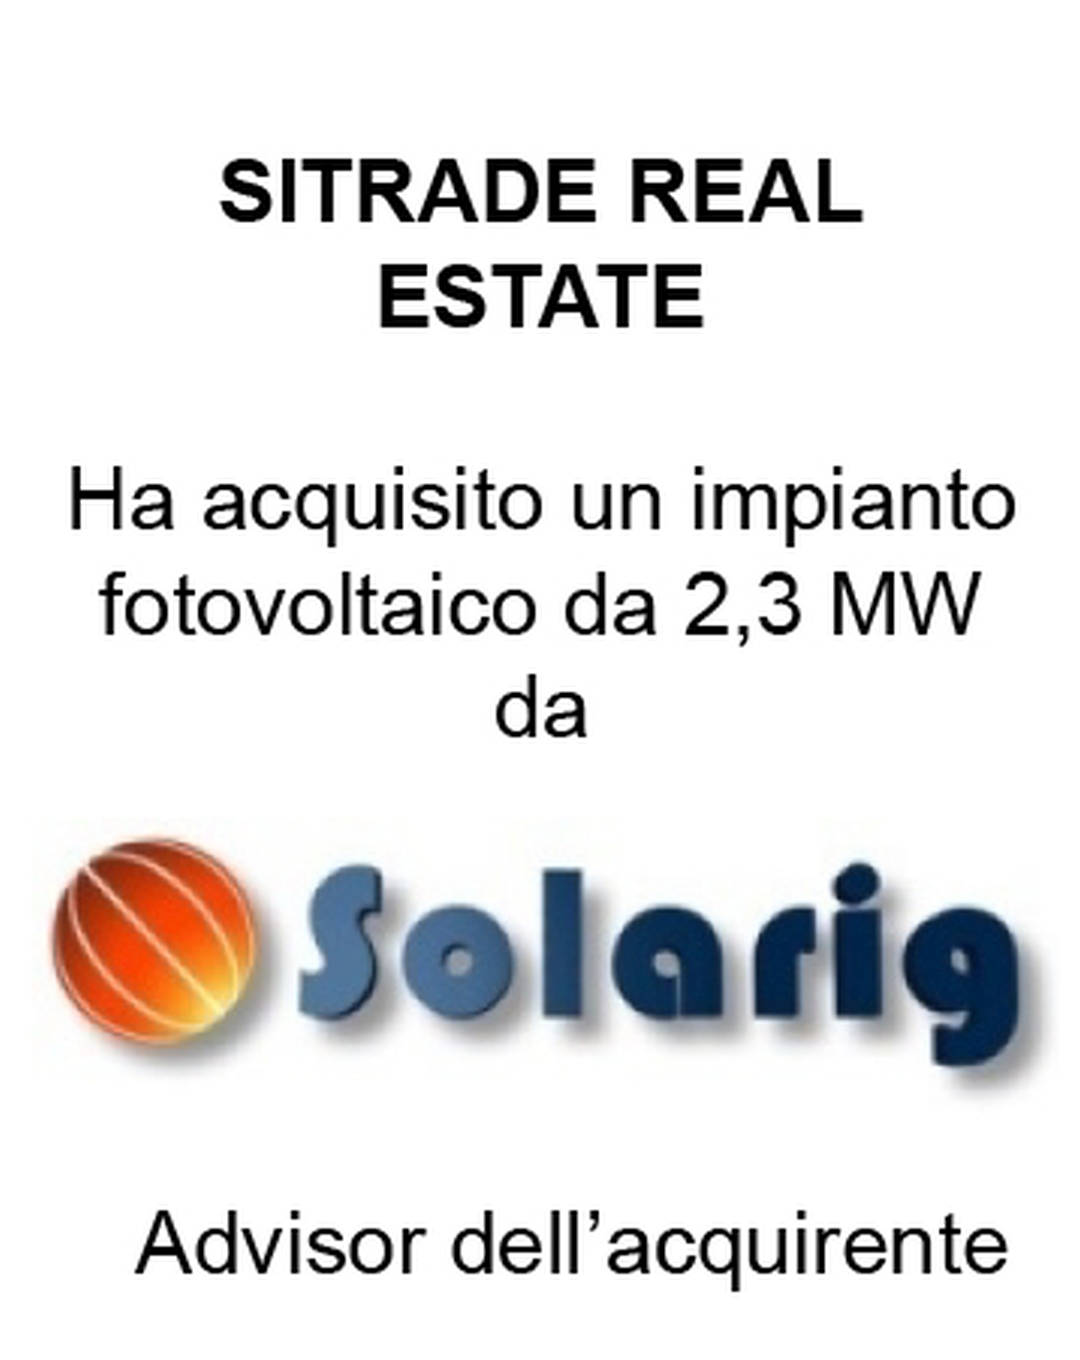 Consulente di Sitrade Real Estate S.r.l. nell'acquisizione di un impianto fotovoltaico 2,3 MW da Solarig. Ha agito in qualità di consulente dell'Acquirente. Incarico completato nel 2015.